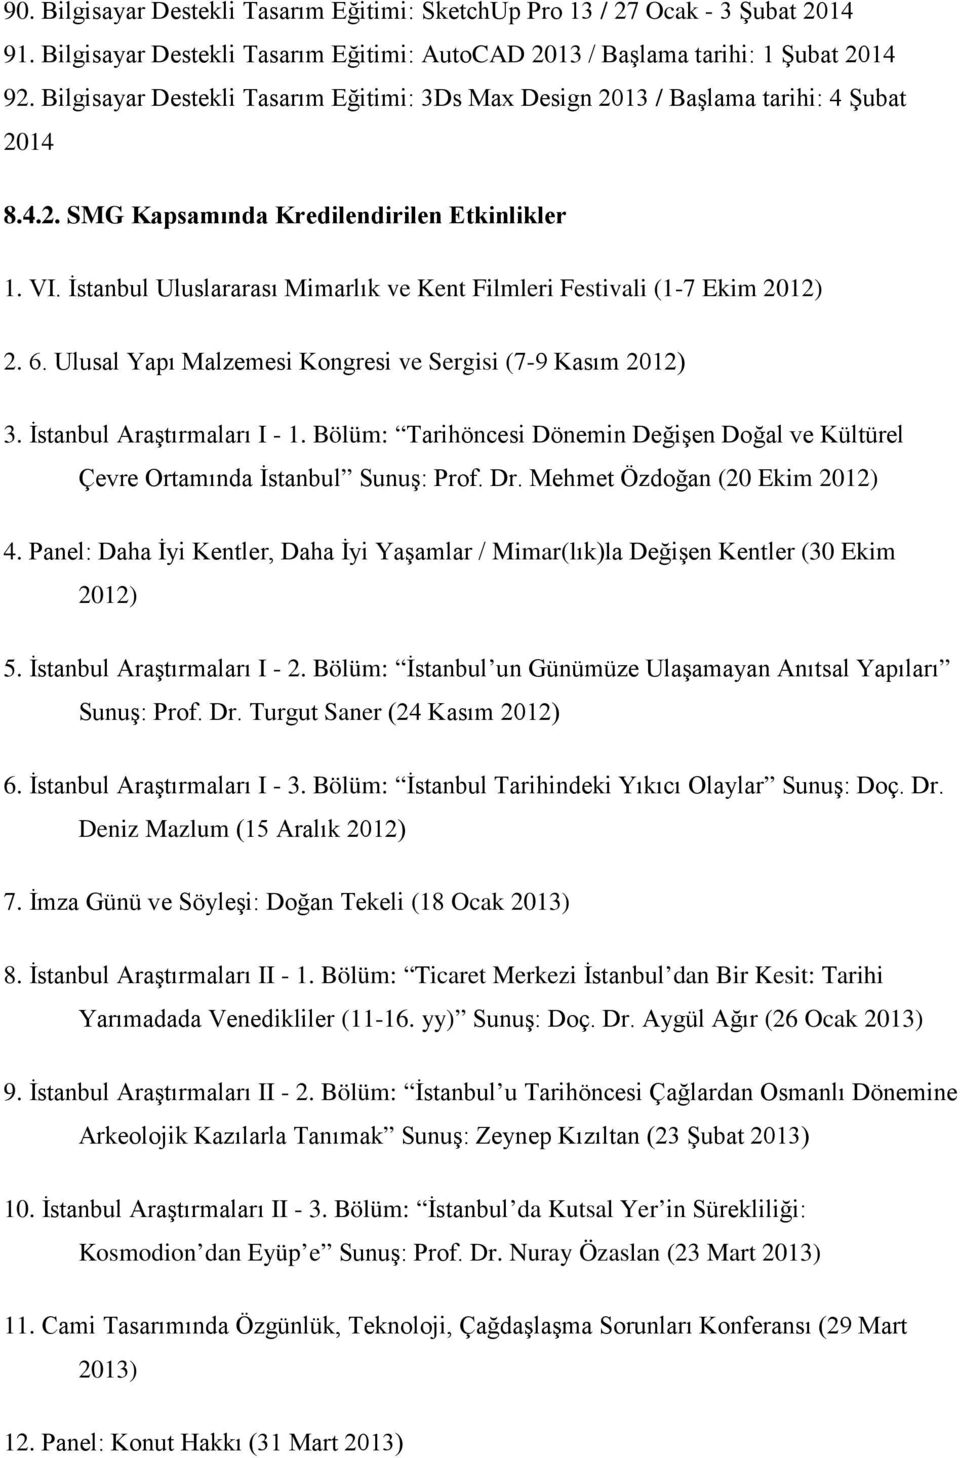 İstanbul Uluslararası Mimarlık ve Kent Filmleri Festivali (1-7 Ekim 2012) 2. 6. Ulusal Yapı Malzemesi Kongresi ve Sergisi (7-9 Kasım 2012) 3. İstanbul Araştırmaları I - 1.